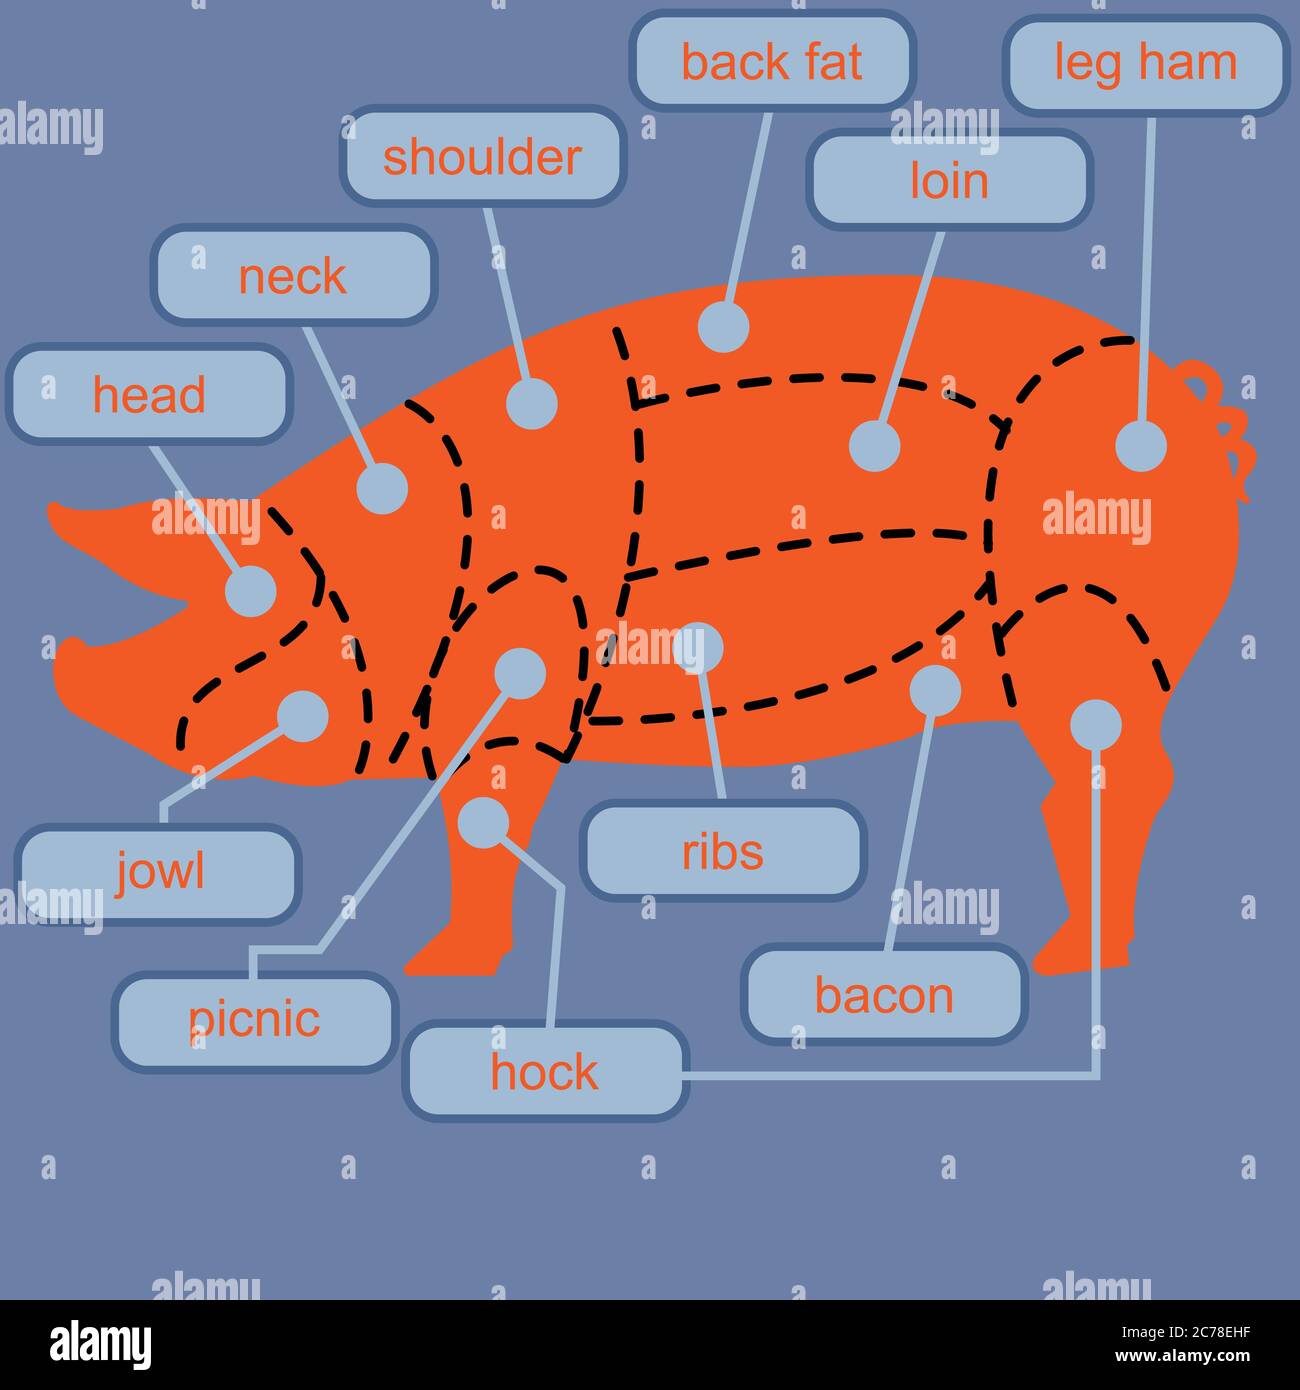 Cuts Pork Stock Illustrations – 1,407 Cuts Pork Stock